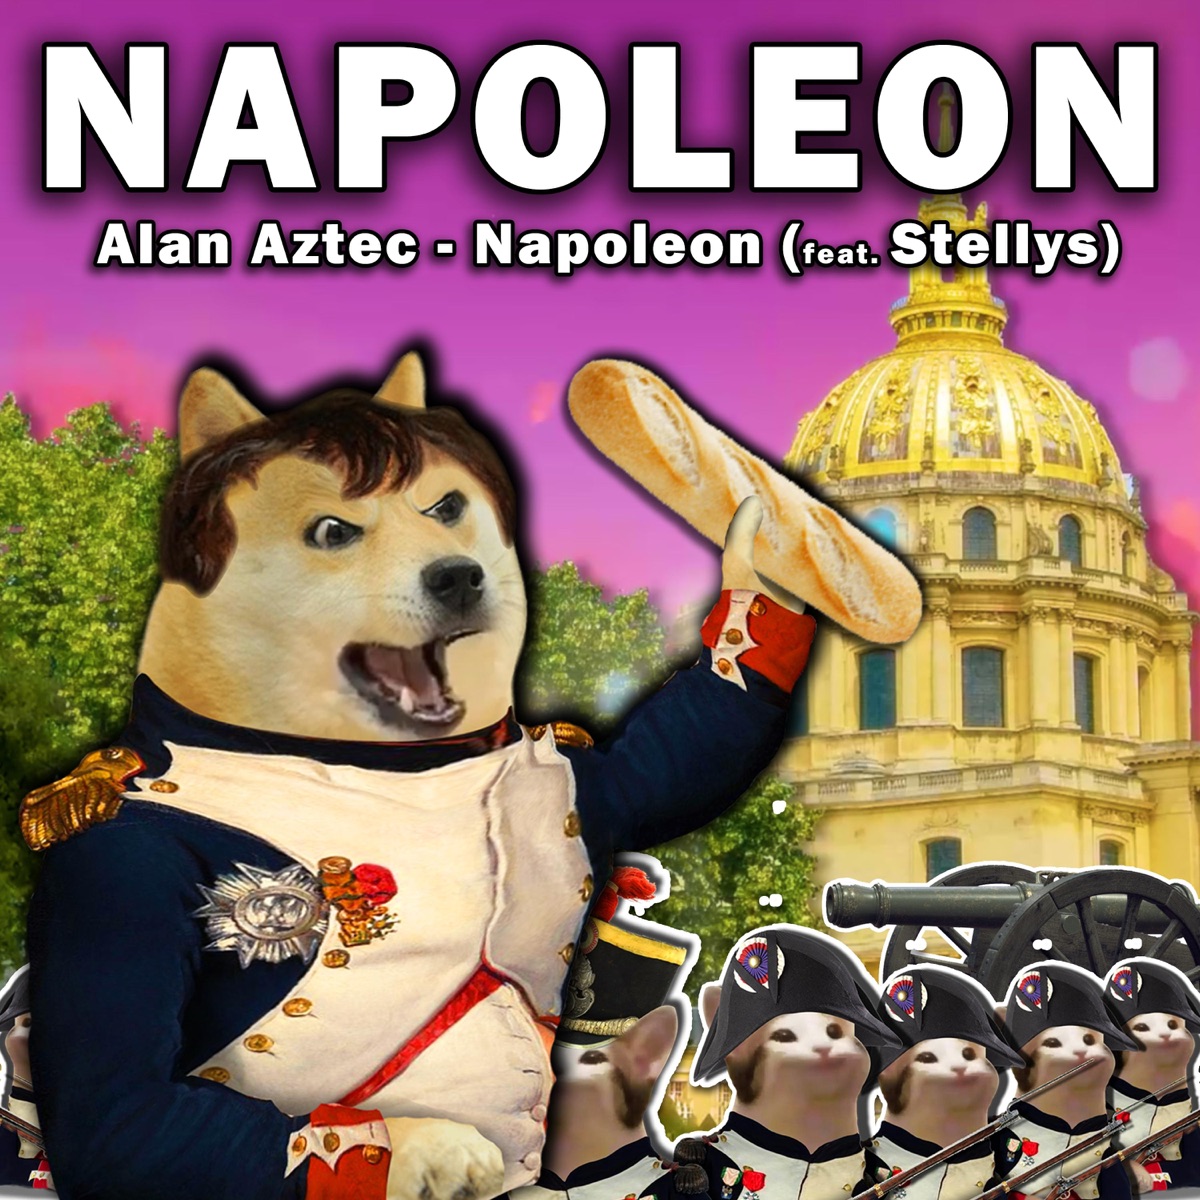 The Legendary Napoleon Bonaparte